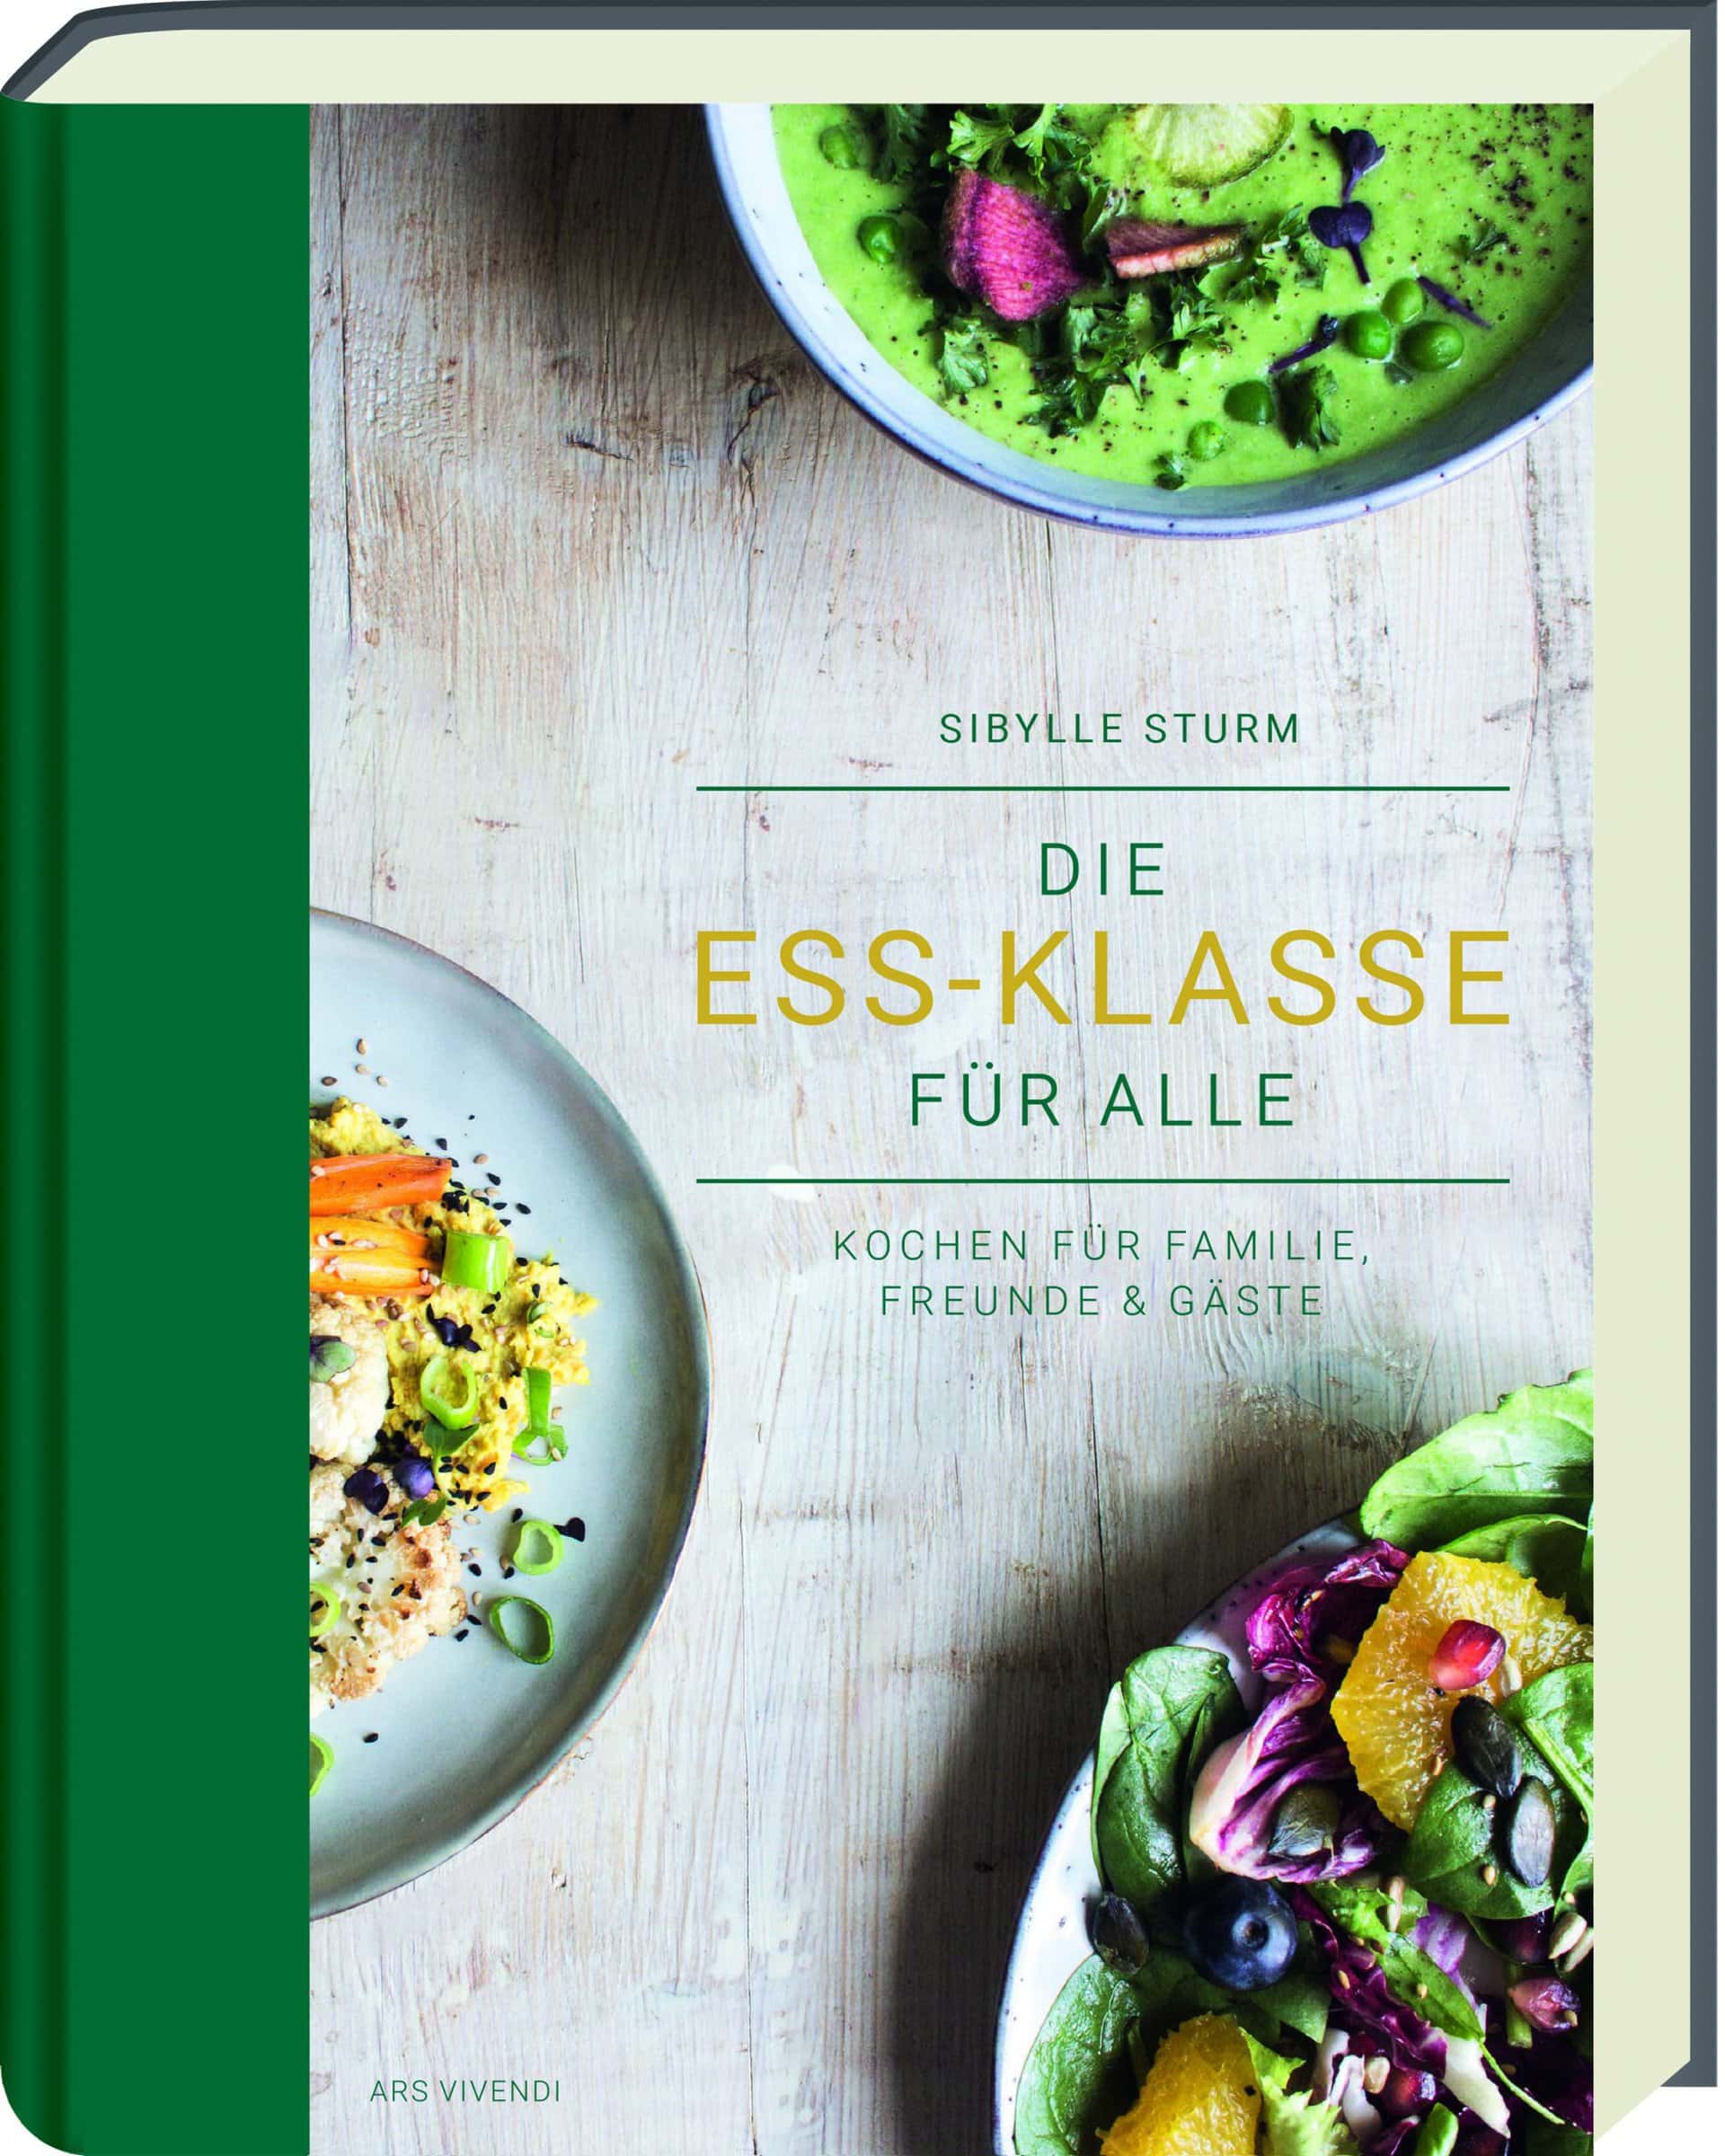 Frontalansicht vom Buch-Cover "Die Ess-Klasse für Alle".